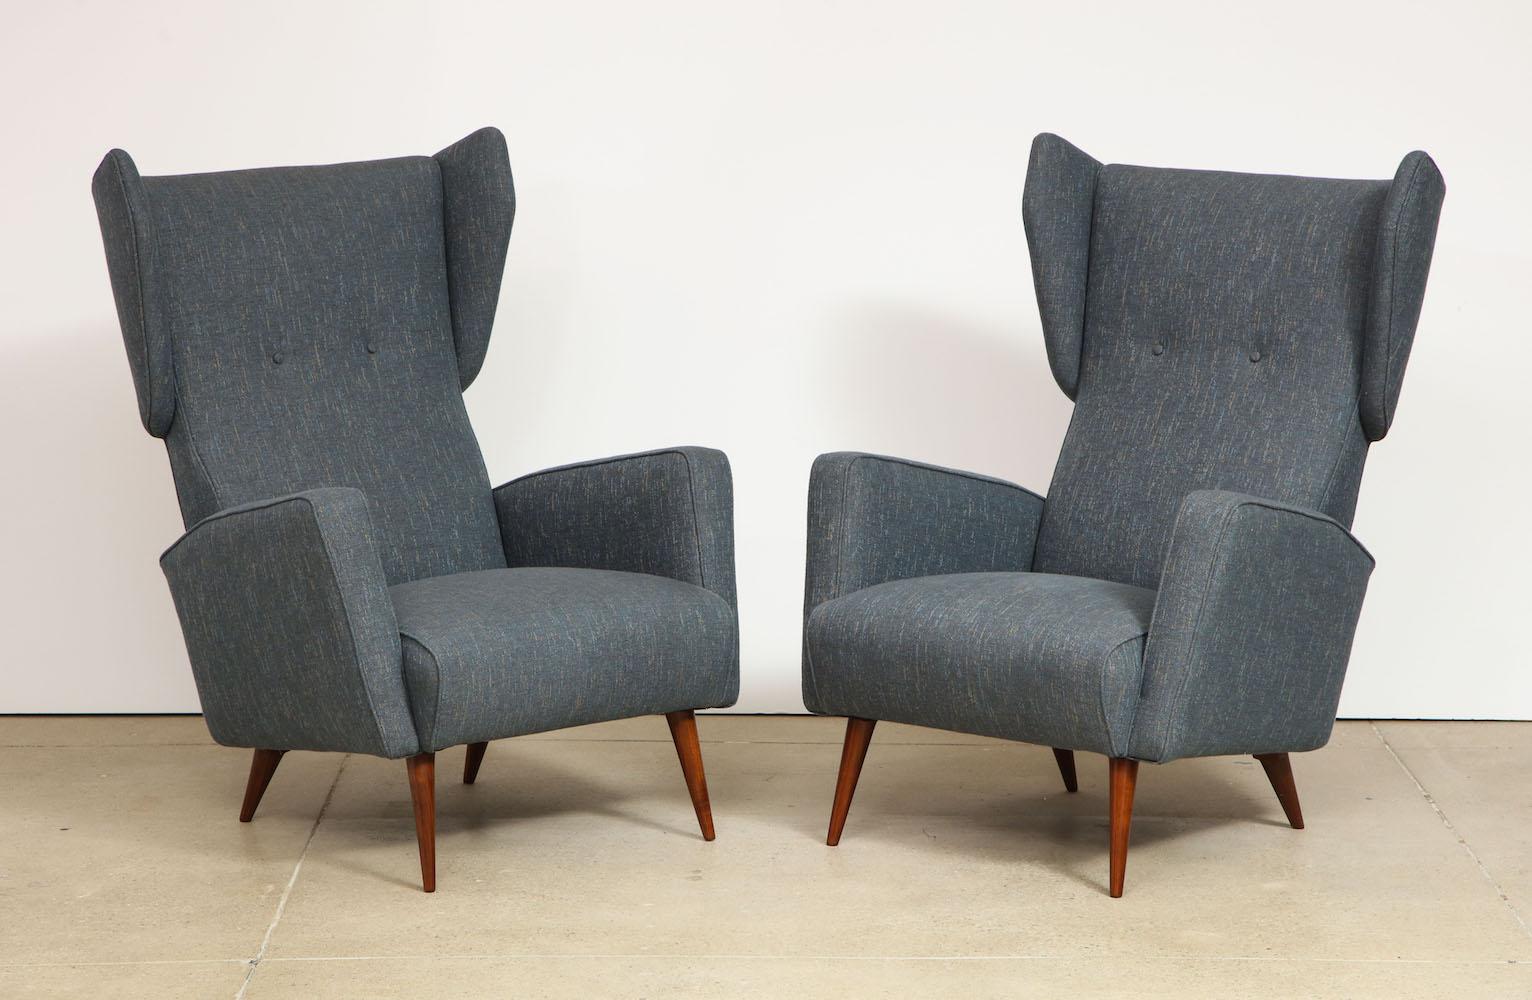 Entworfen für das Royal Hotel in Neapel, Italien, und hergestellt von Dassi. Ein tolles Paar Ohrensessel mit spitz zulaufenden Holzbeinen. Diese Stühle wurden vom Gio Ponti Archiv authentifiziert.
 